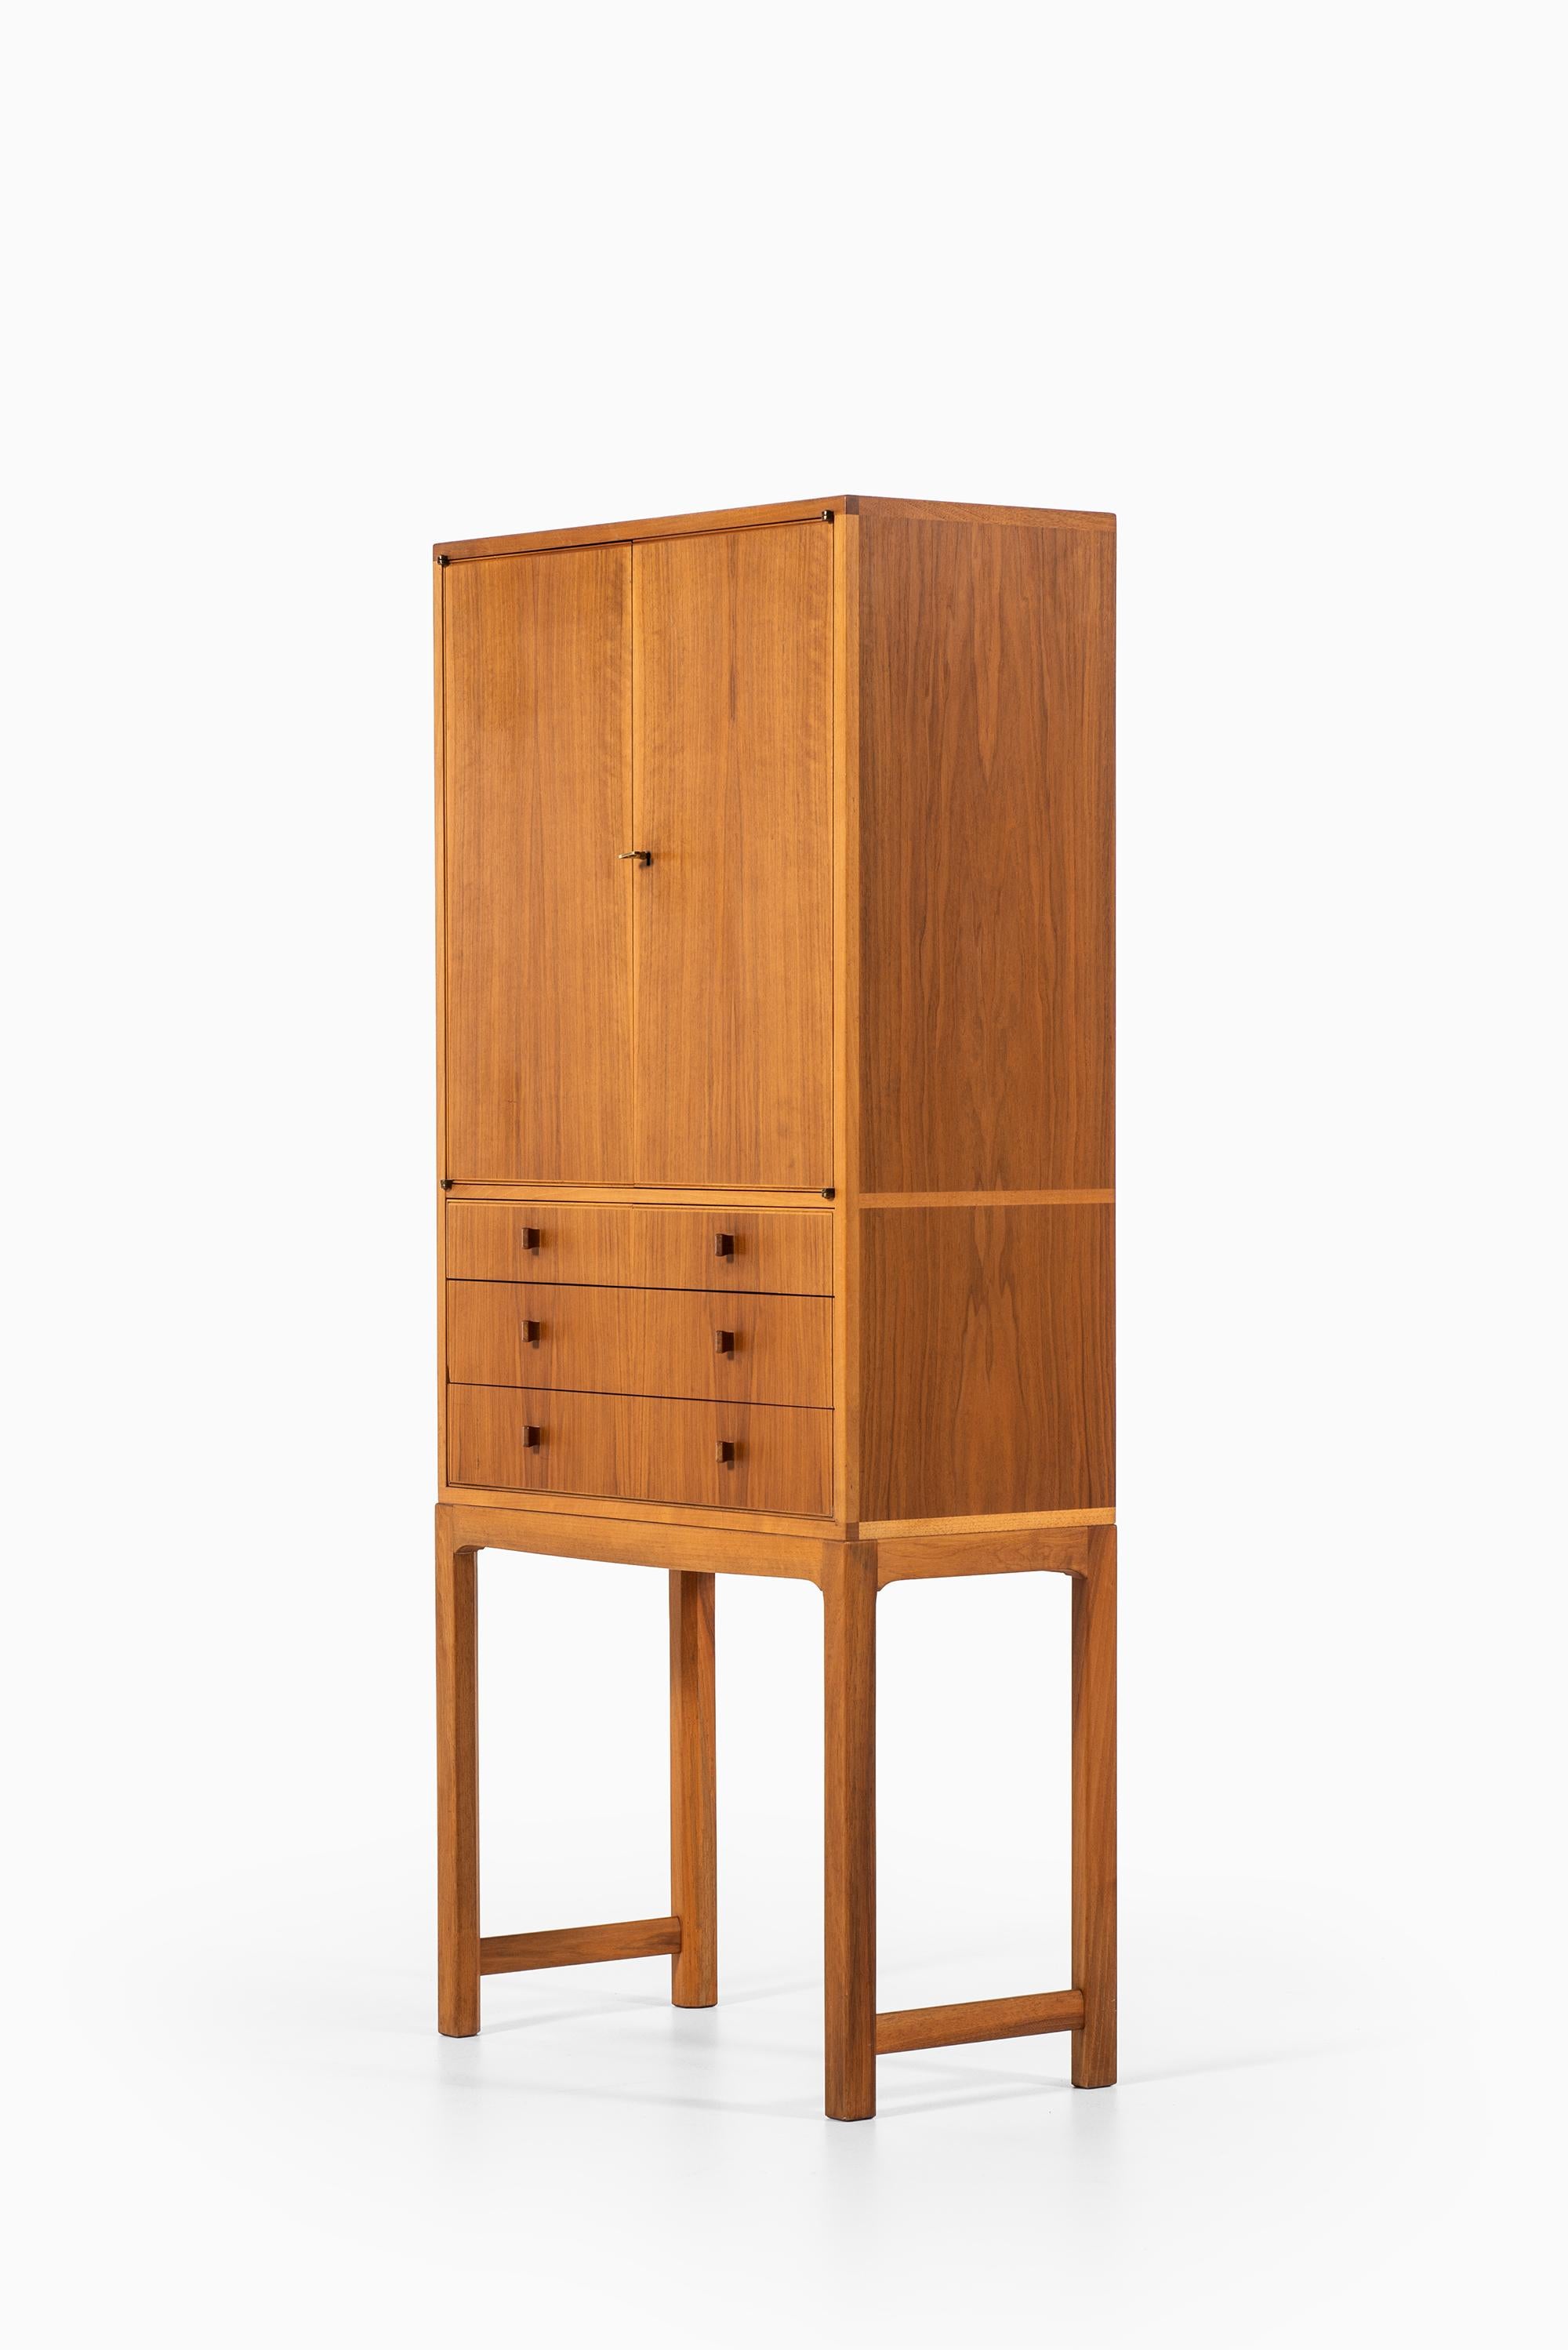 Mid-20th Century Carl Malmsten Cabinet Model Lillbo Produced by Carl Löfving & Söner in Sweden